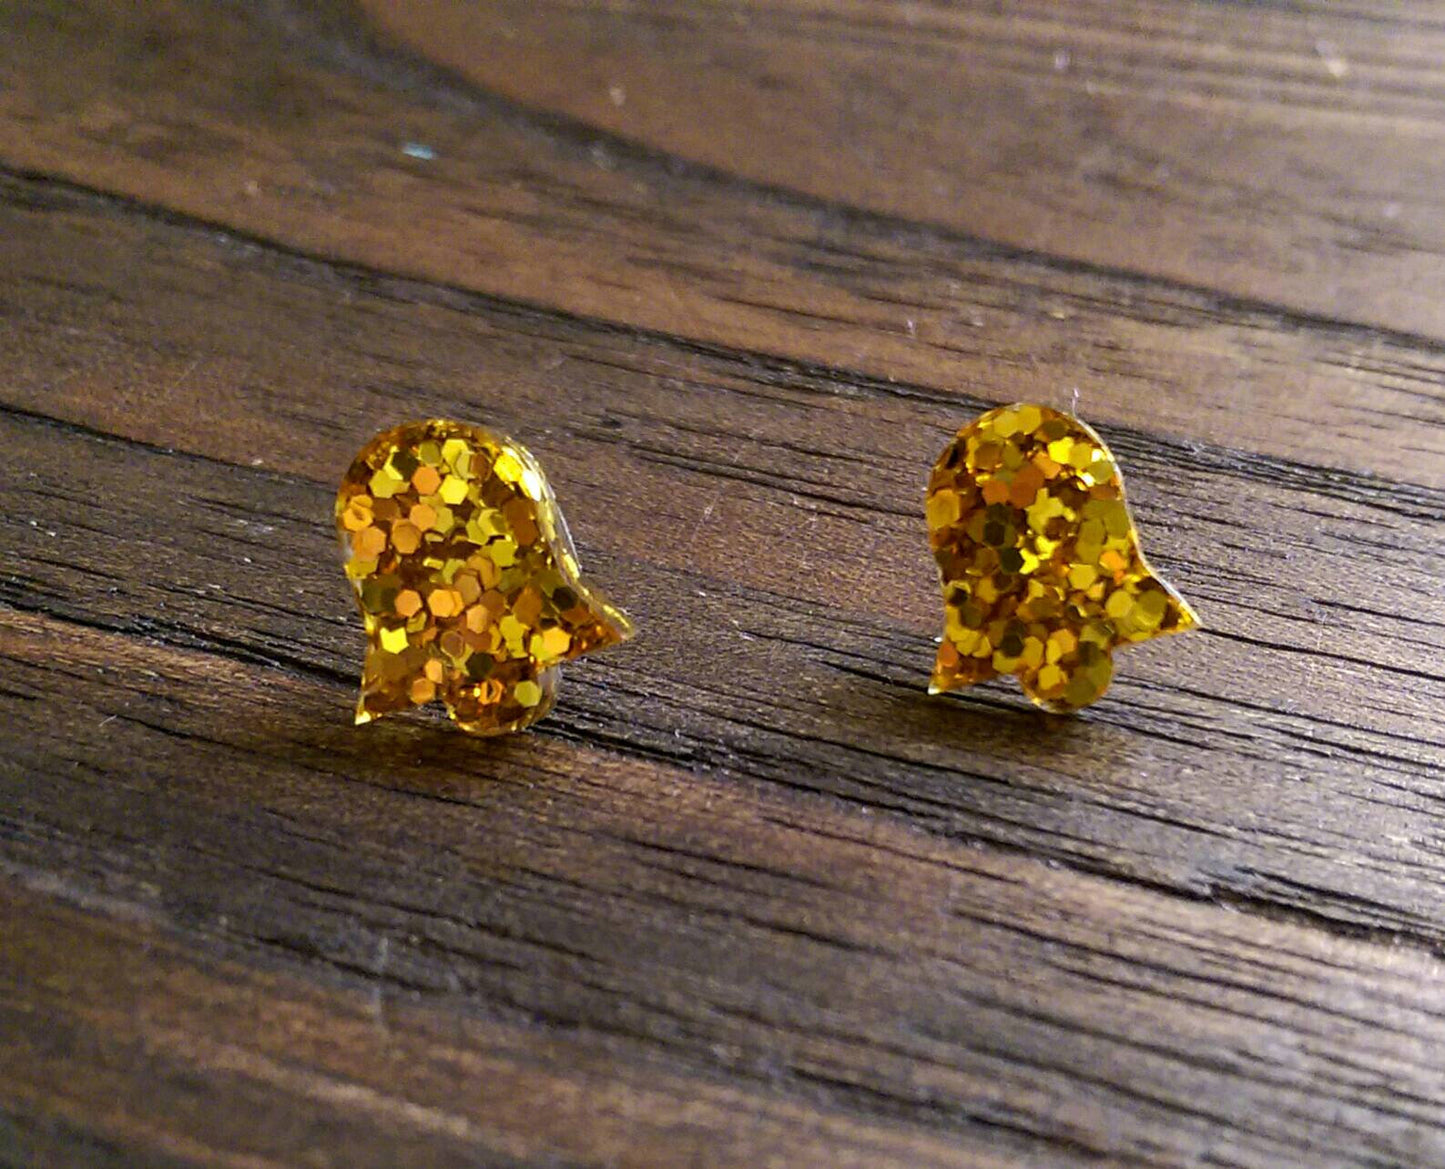 Bell Flower Resin Stud Earrings, Gold Glitter Earrings. Stainless Steel Stud Earrings.